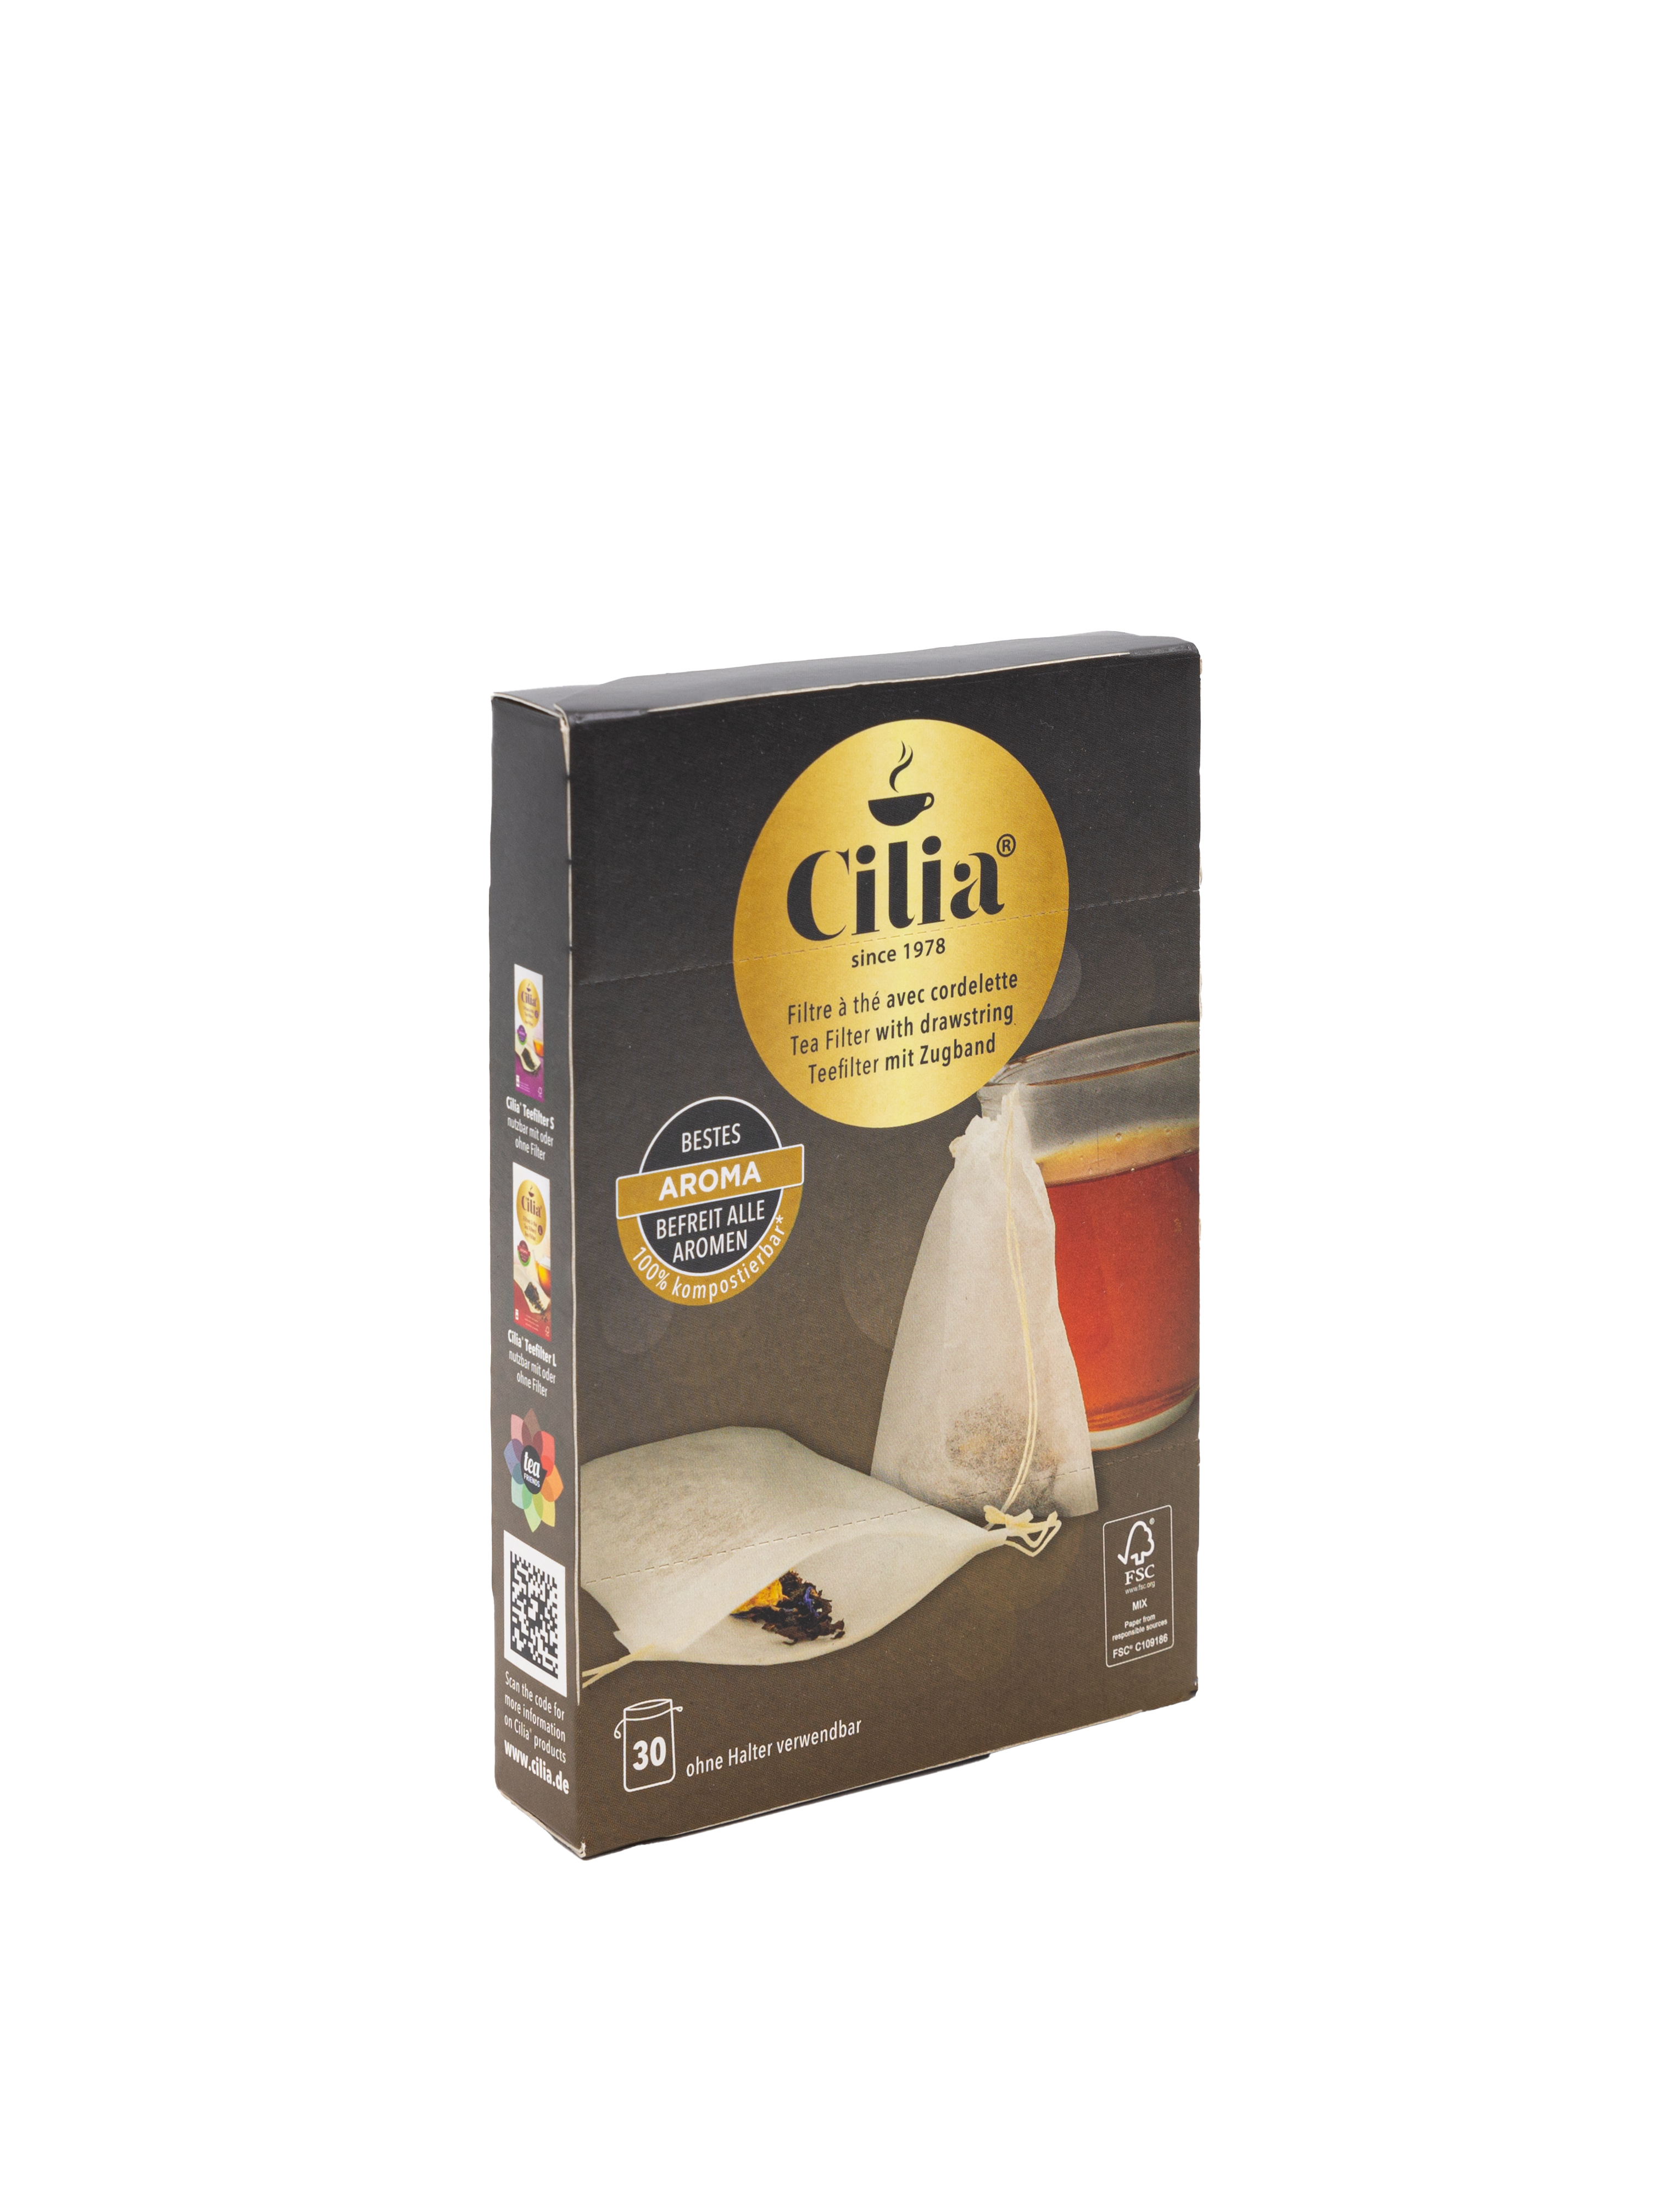 Cilia® Teefilter mit Zugband: Der praktische Teefilter für maximalen Genuss